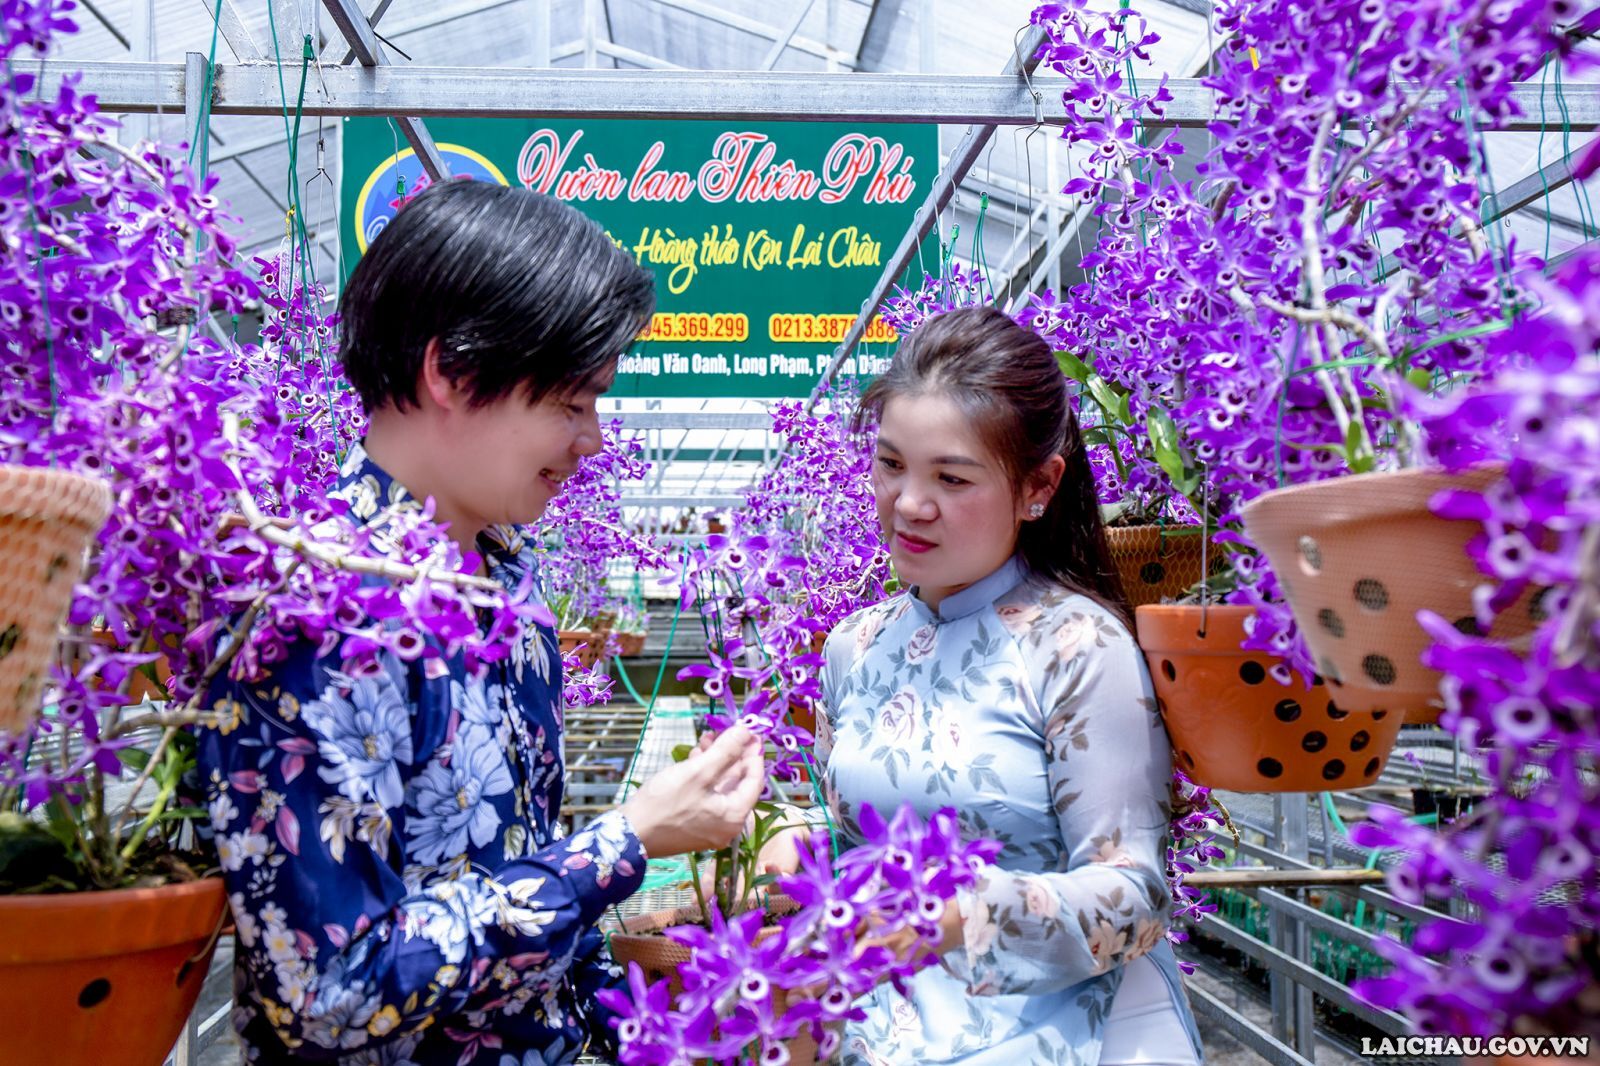 Vợ chồng anh Oanh hạnh phúc bên vườn Hoàng thảo kèn Lai Châu có một không hai, nơi đây tràn ngập tình yêu và sự tâm huyết. Vì vậy nhiều người chơi lan đặt cho anh Oanh danh hiệu là ông Vua của Hoàng thảo kèn Lai Châu.